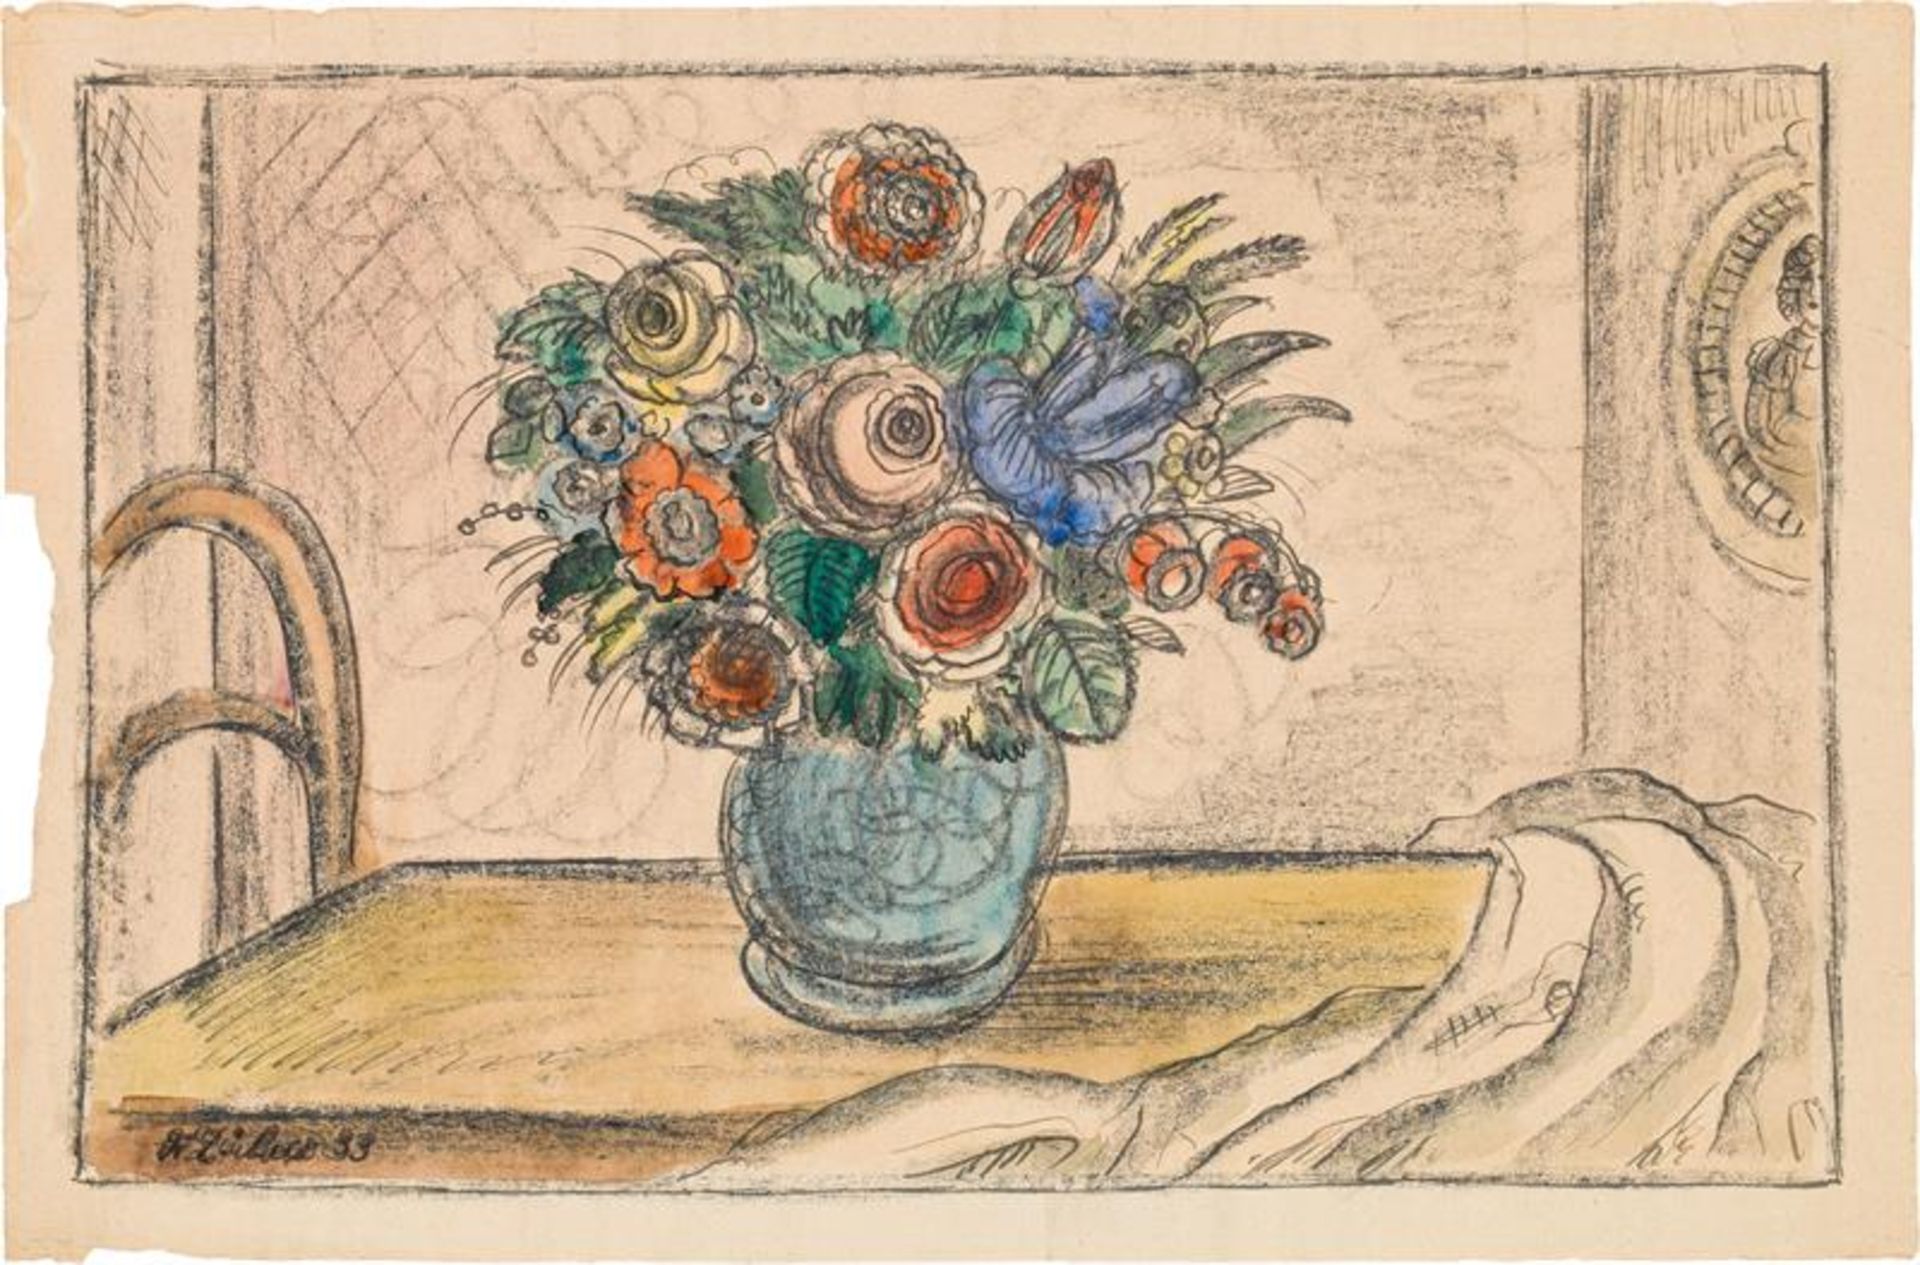 Franz von Zülow: Flowers in a vase